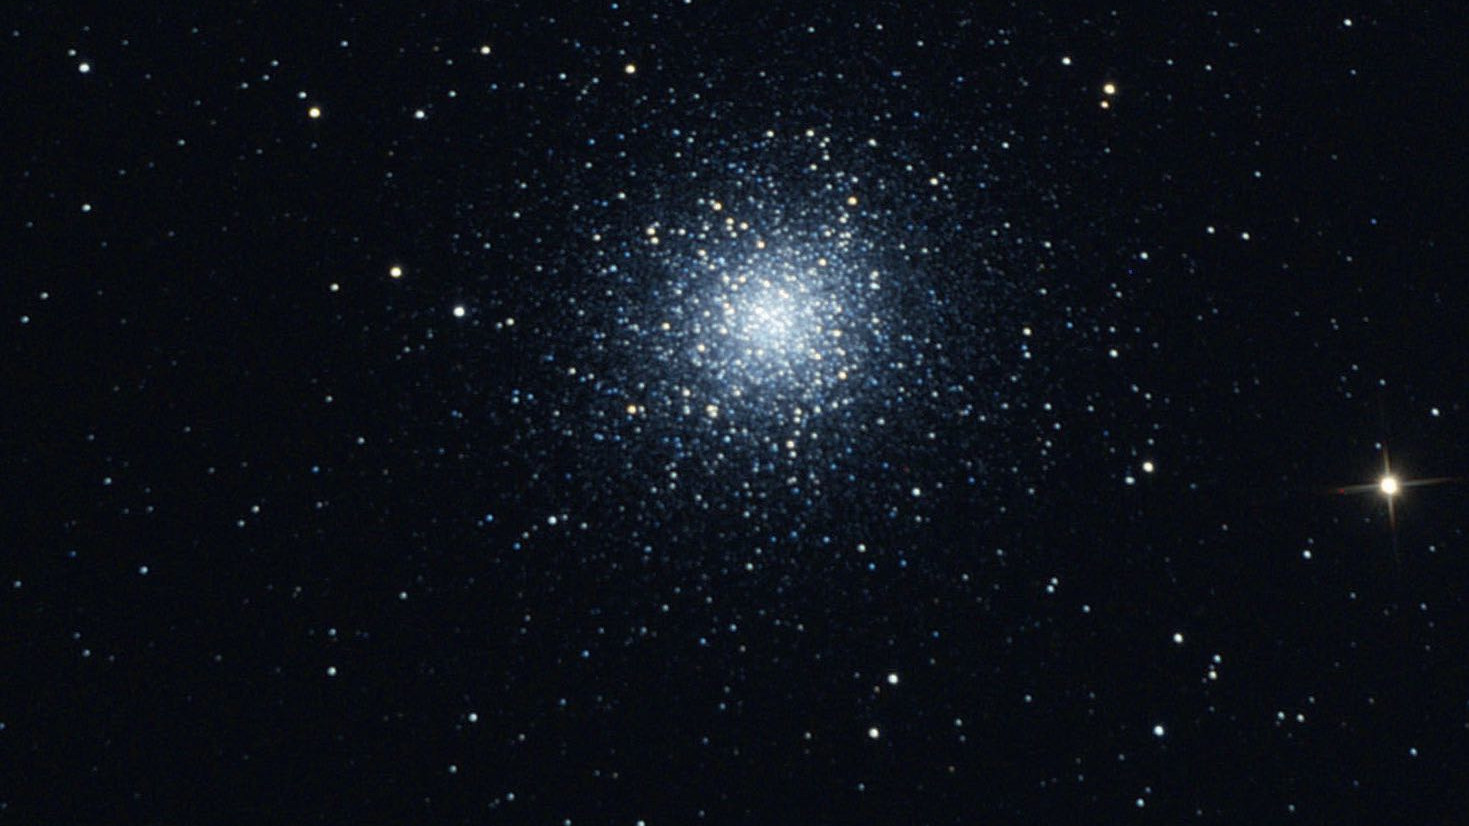 Aunque los prismáticos no son capaces de resolver M13 en estrellas individuales, sí que permiten identificarlo como un cúmulo globular. Marcus Degenkolbe